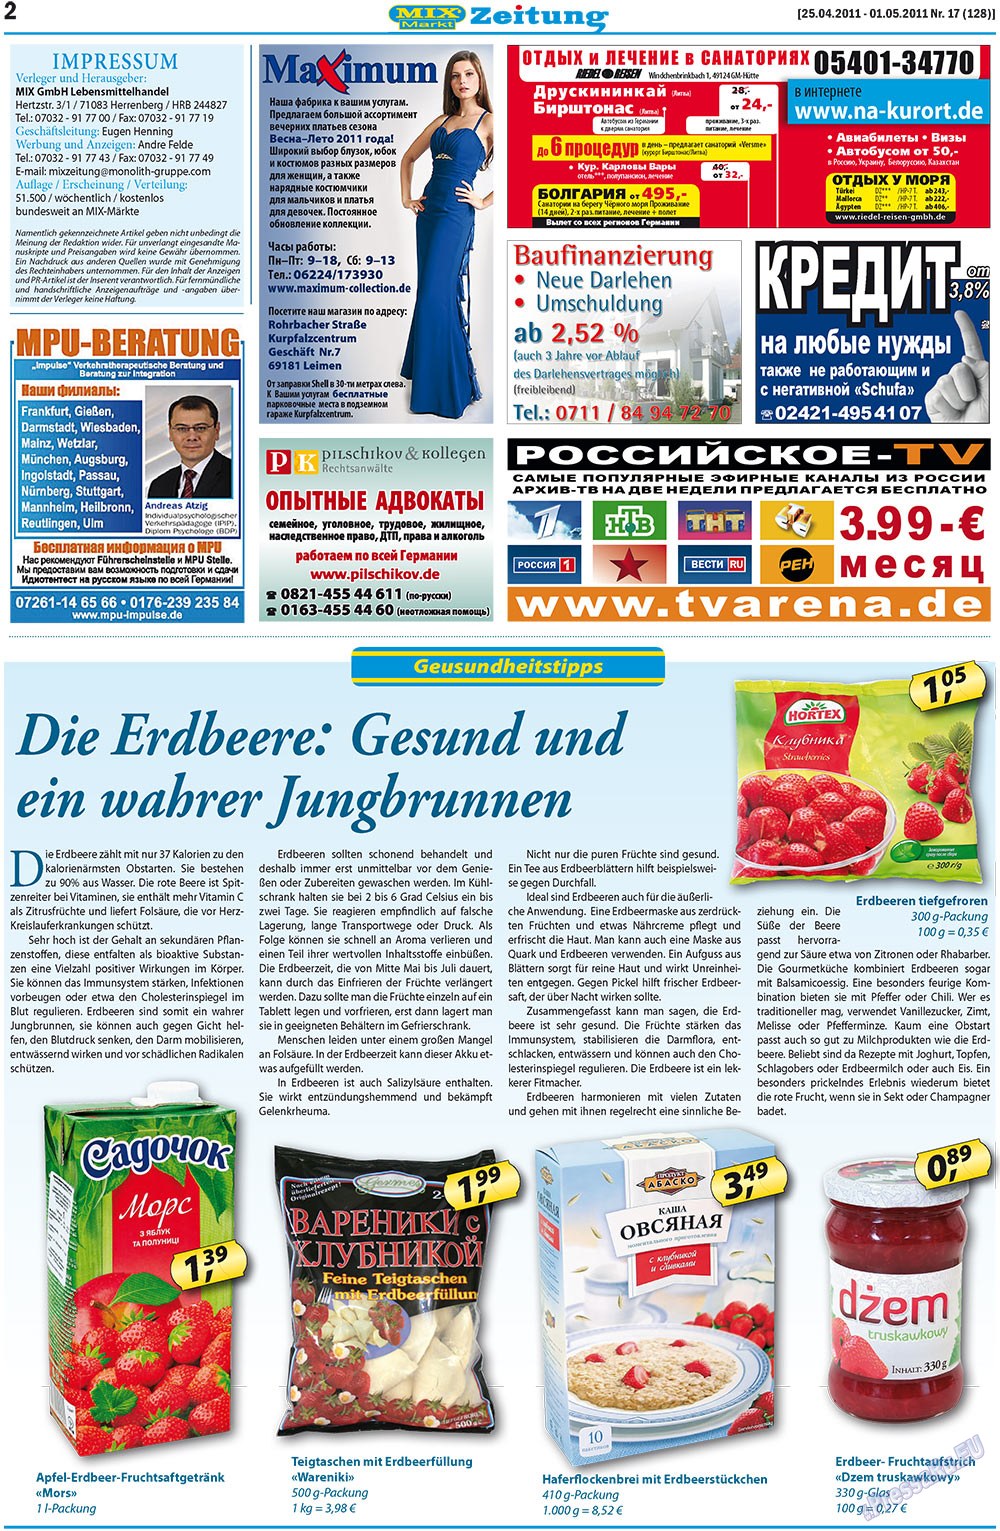 MIX-Markt Zeitung, газета. 2011 №17 стр.2